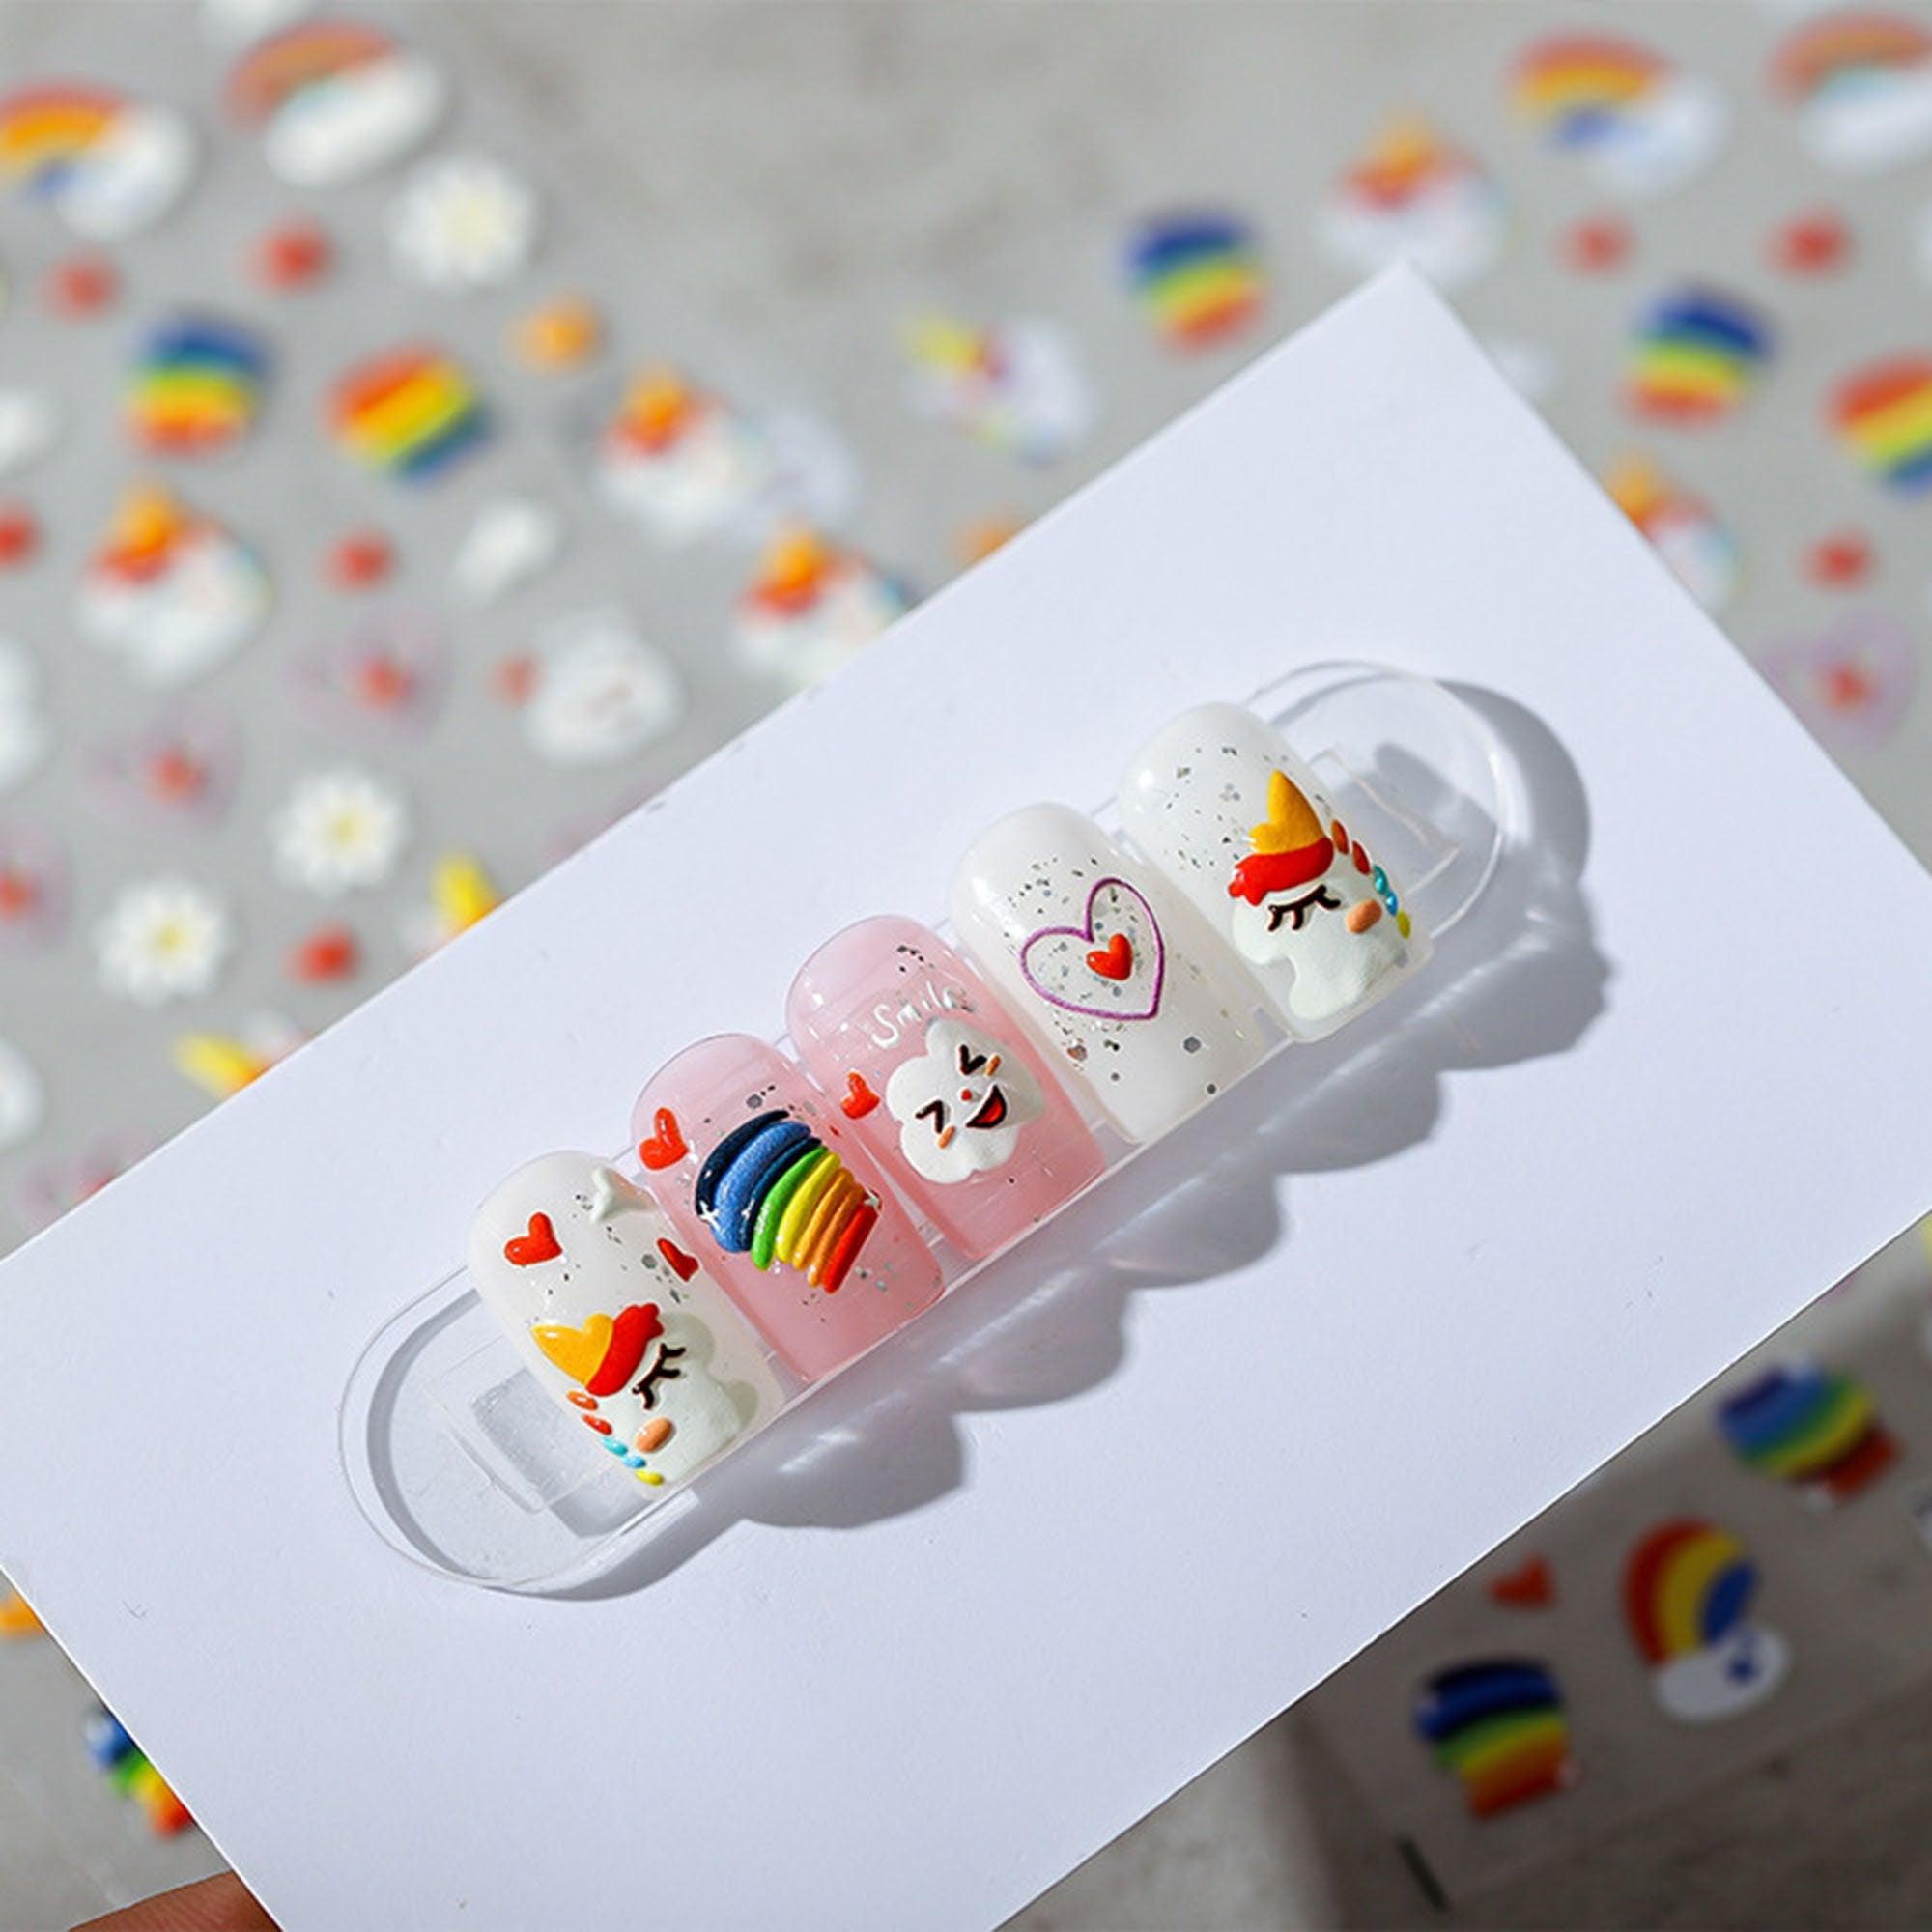 Rainbow And Unicorn Nail Stickers, Rainbow Nail Decals, Nail Decal Art, 3D Nails, 5D Nails, DIY Nails - Miss Fairy Nails